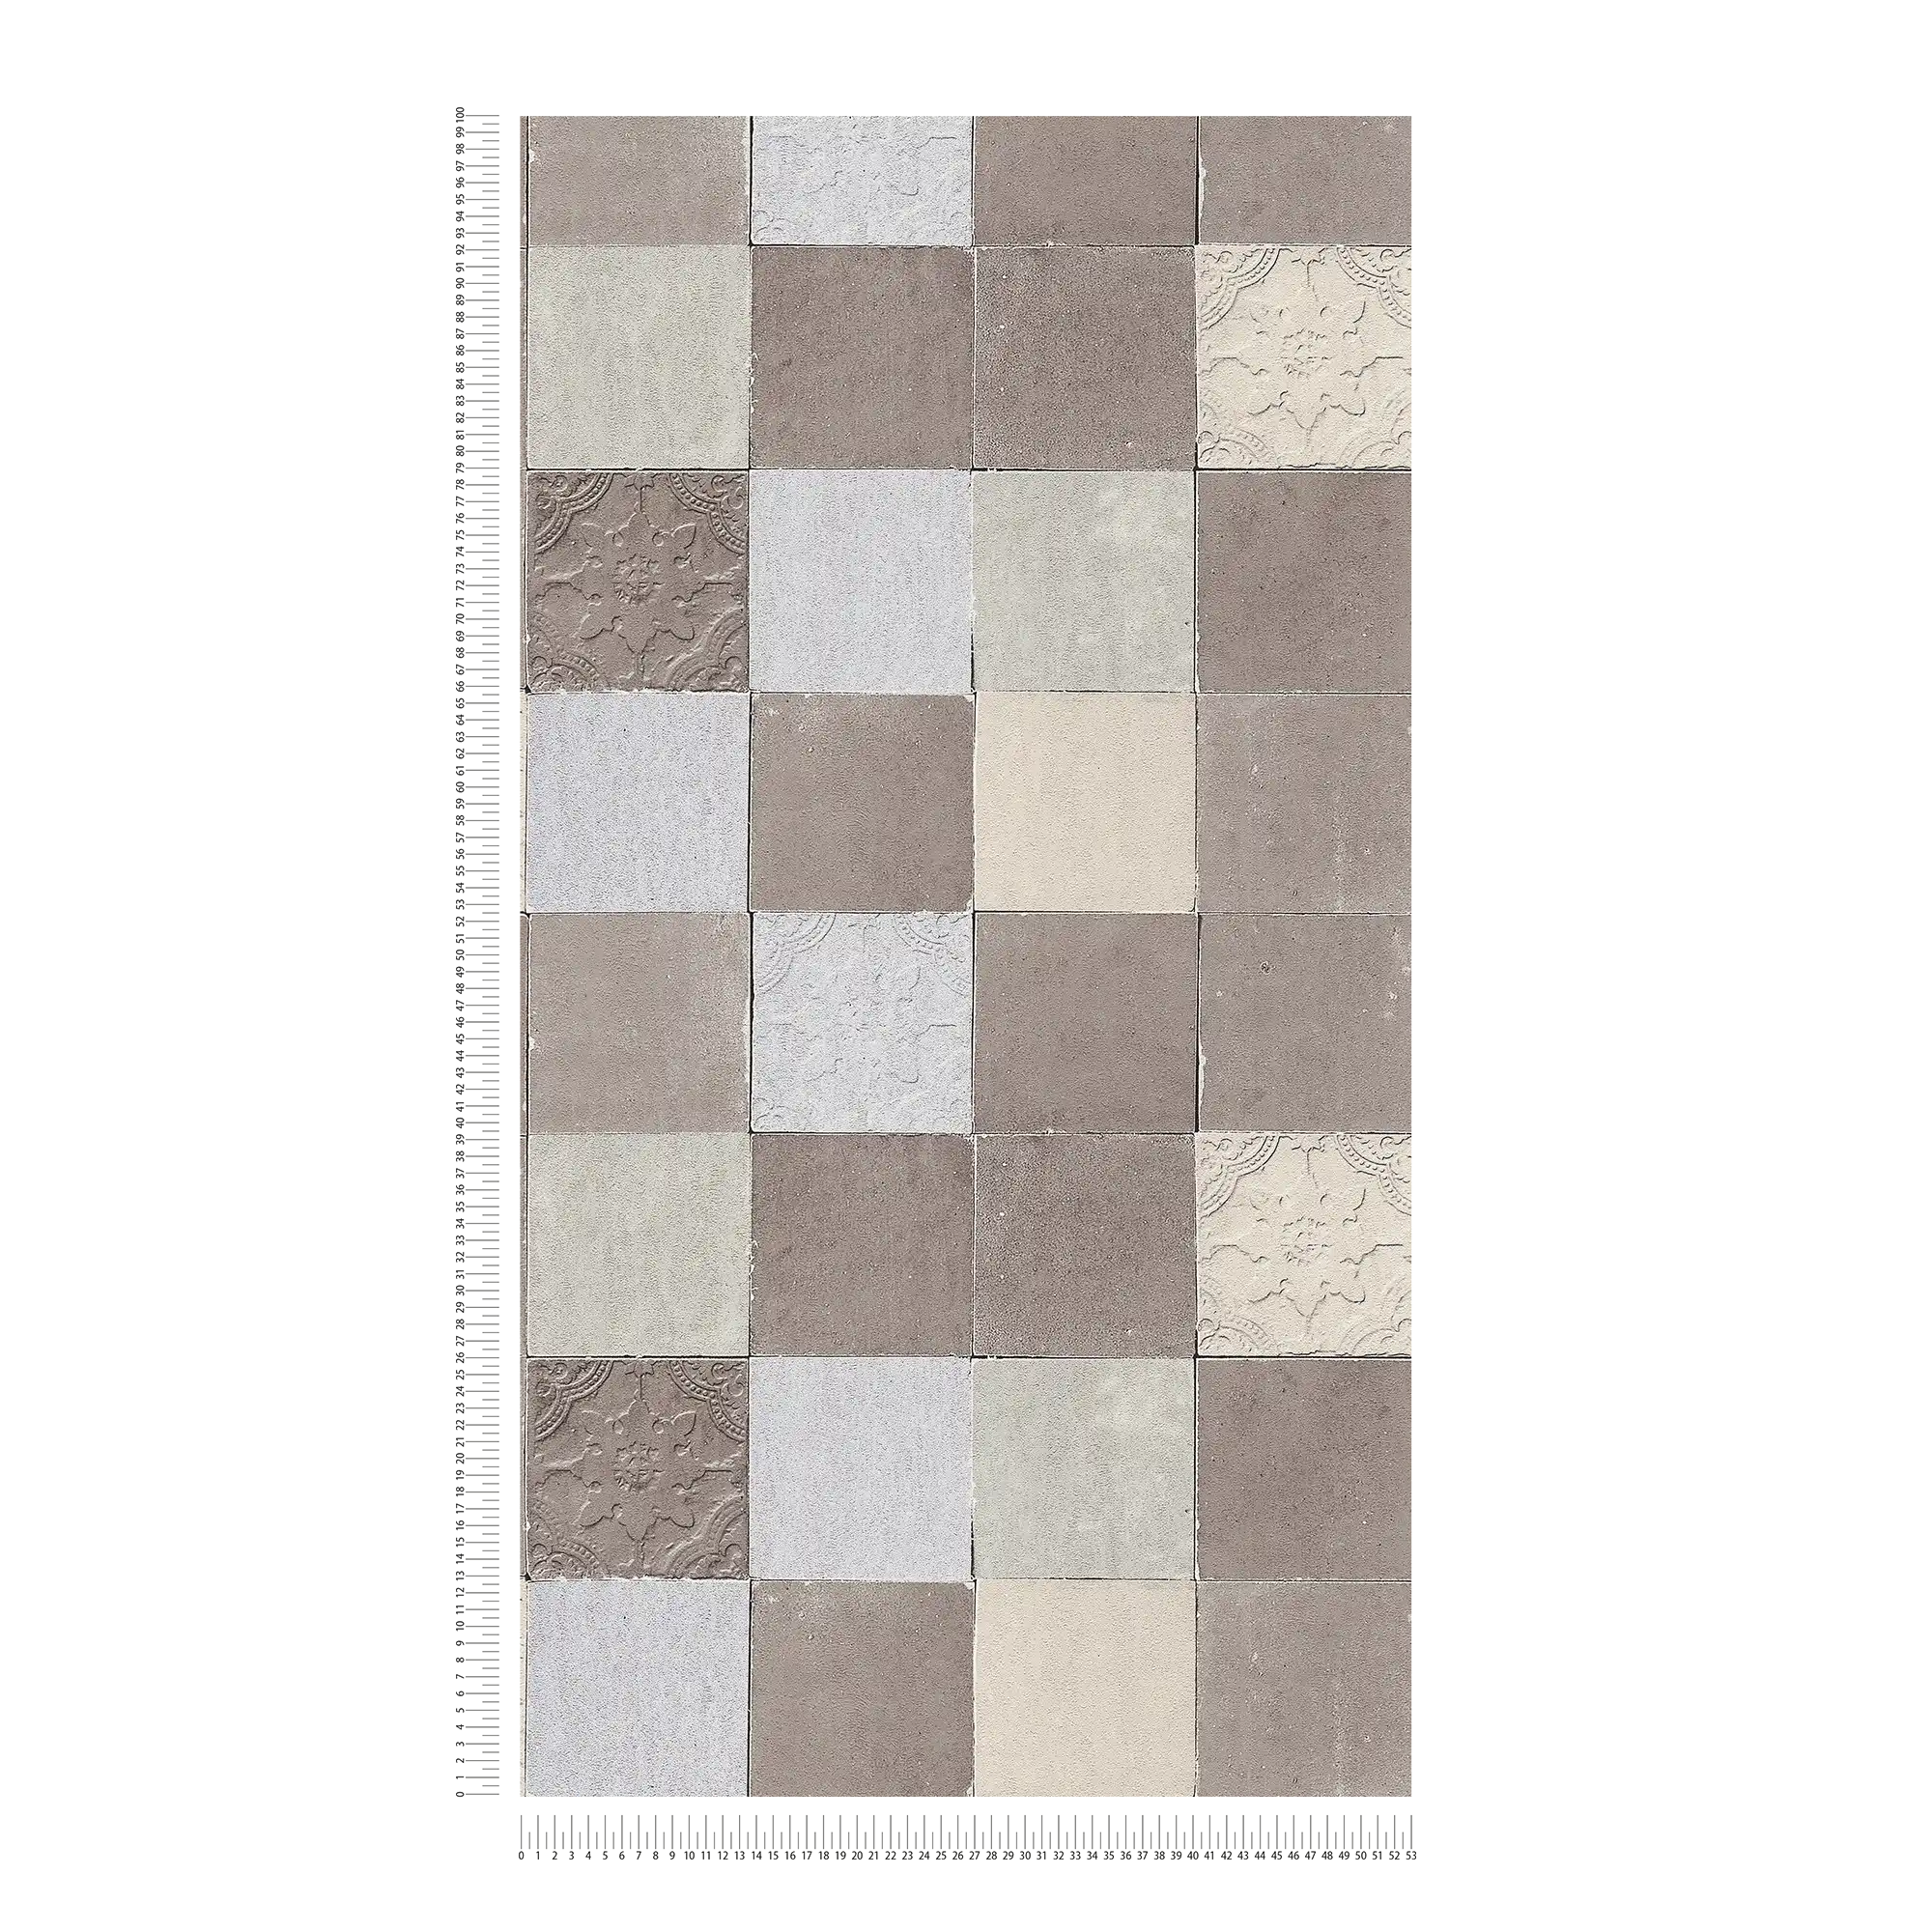             Fliesen-Tapete orientalisches Mosaik – Grau, Creme
        